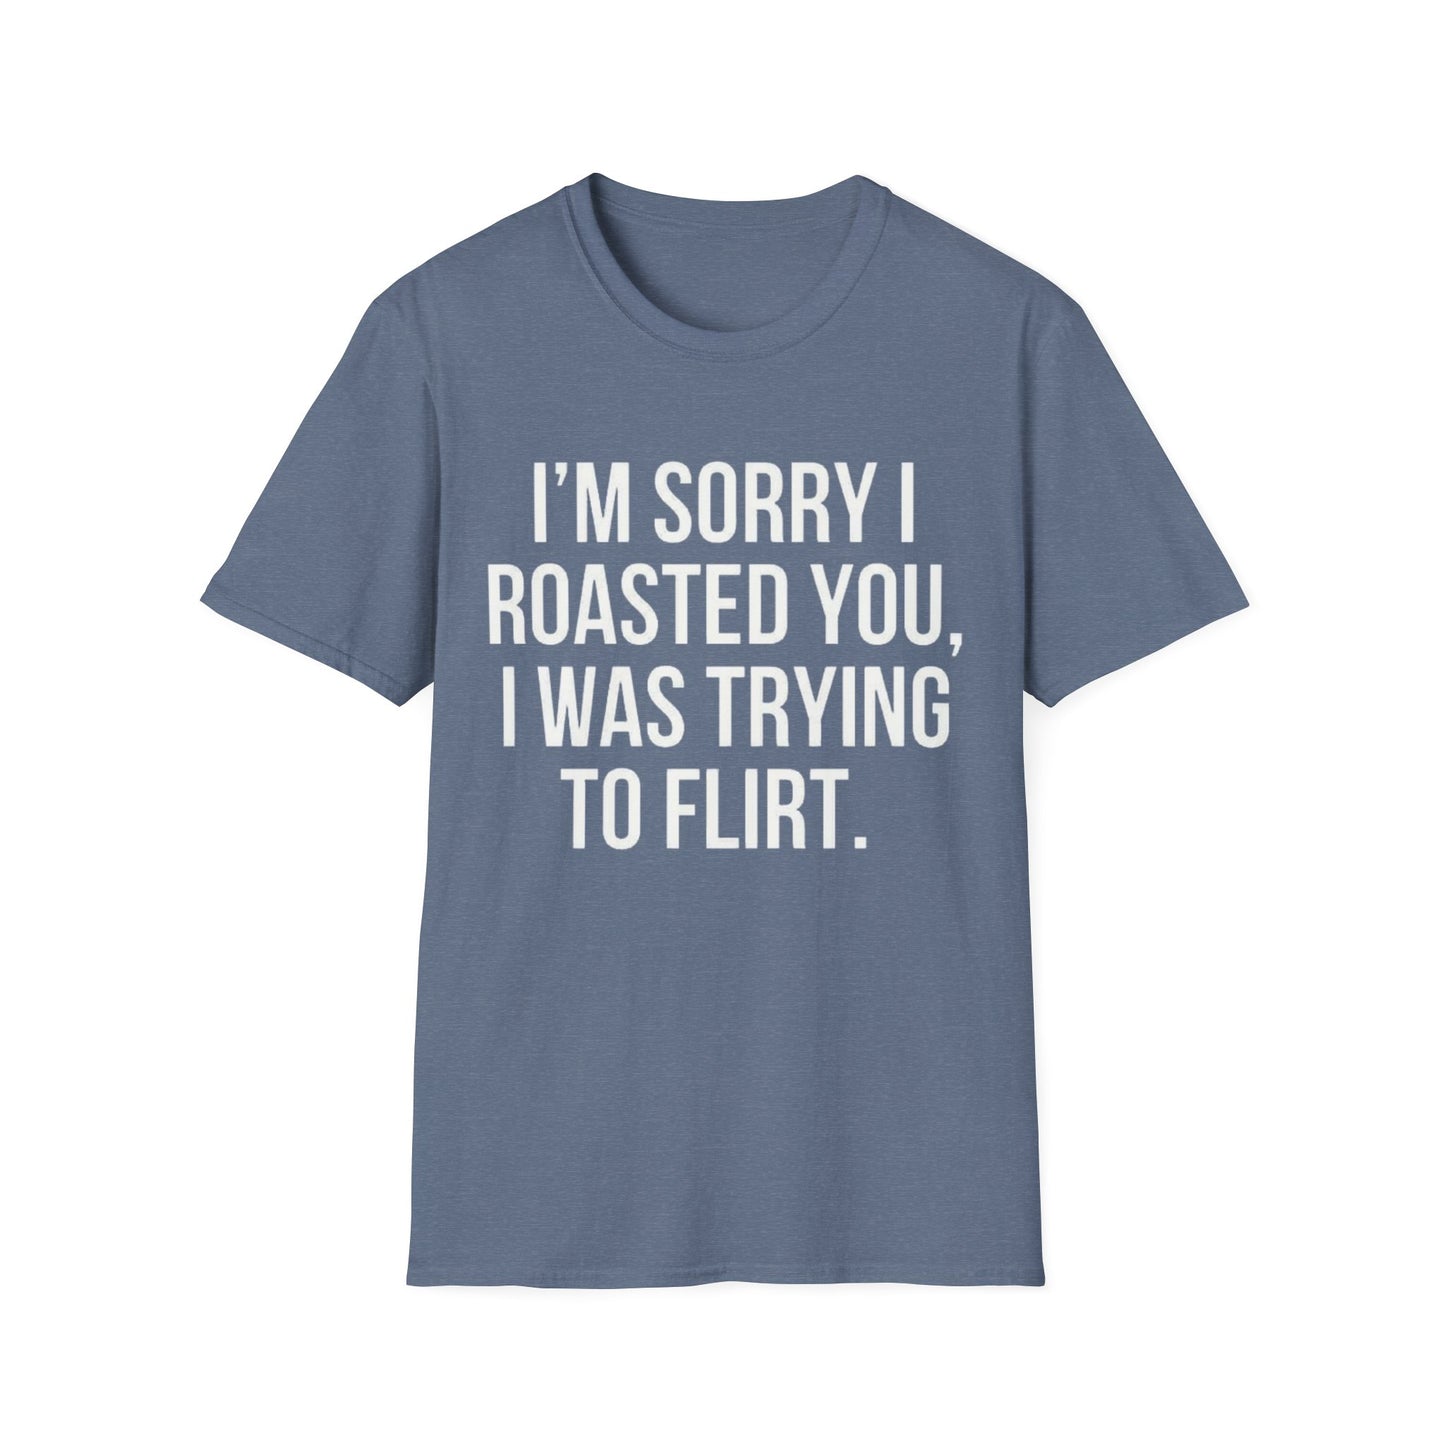 I’m sorry I roasted you, I was trying to flirt - Unisex Softstyle T-Shirt